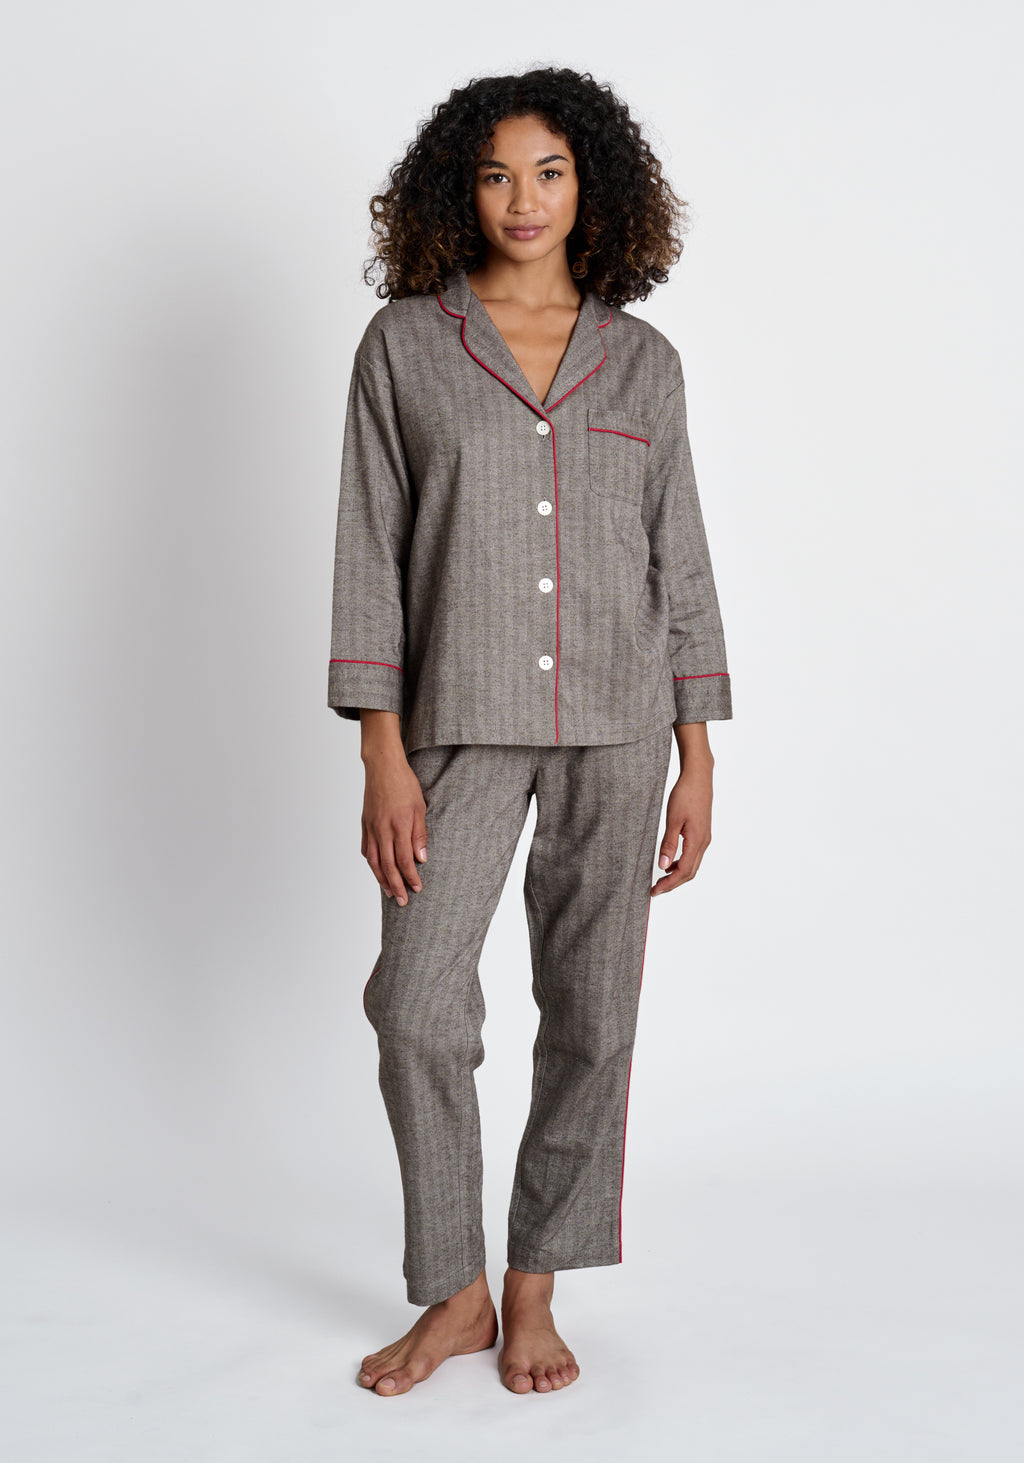 Sleepy Jones Marina Flannel Pajama Set